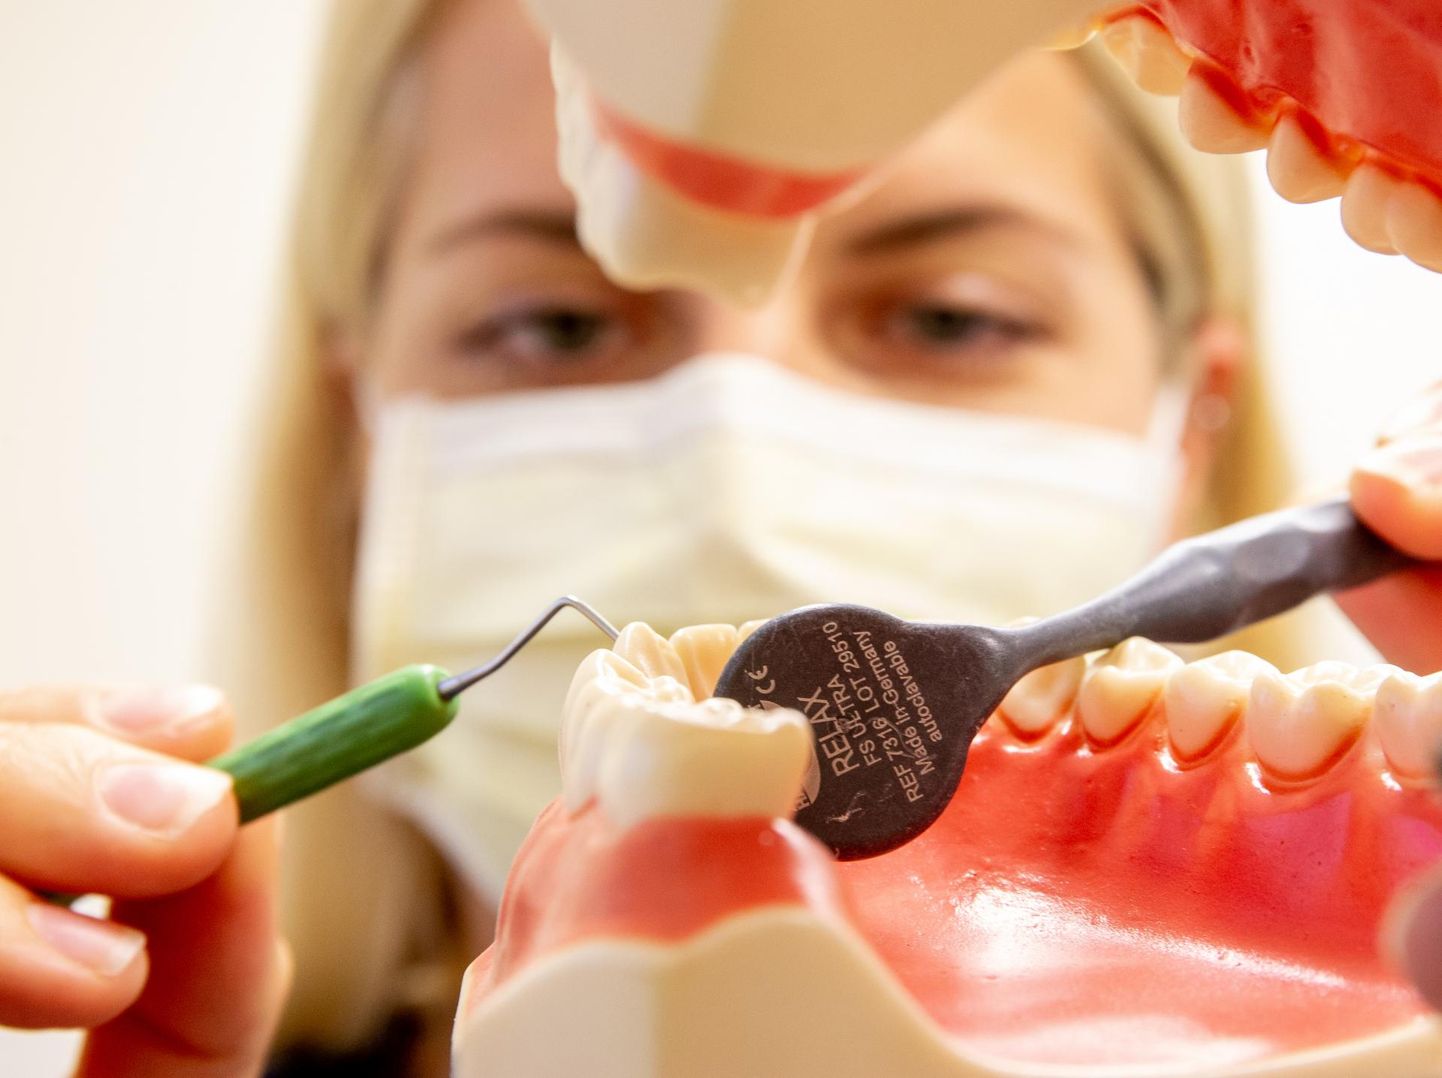 Hüvitis kehtib esmavajalike hambaraviteenuste puhul nagu vastuvõtud, diagnostika, täidiste paigaldamine, hamba eemaldamine, mädakolde ravimine, juureravi, igemealuse hambakivi eemaldamine ja tuimestus.